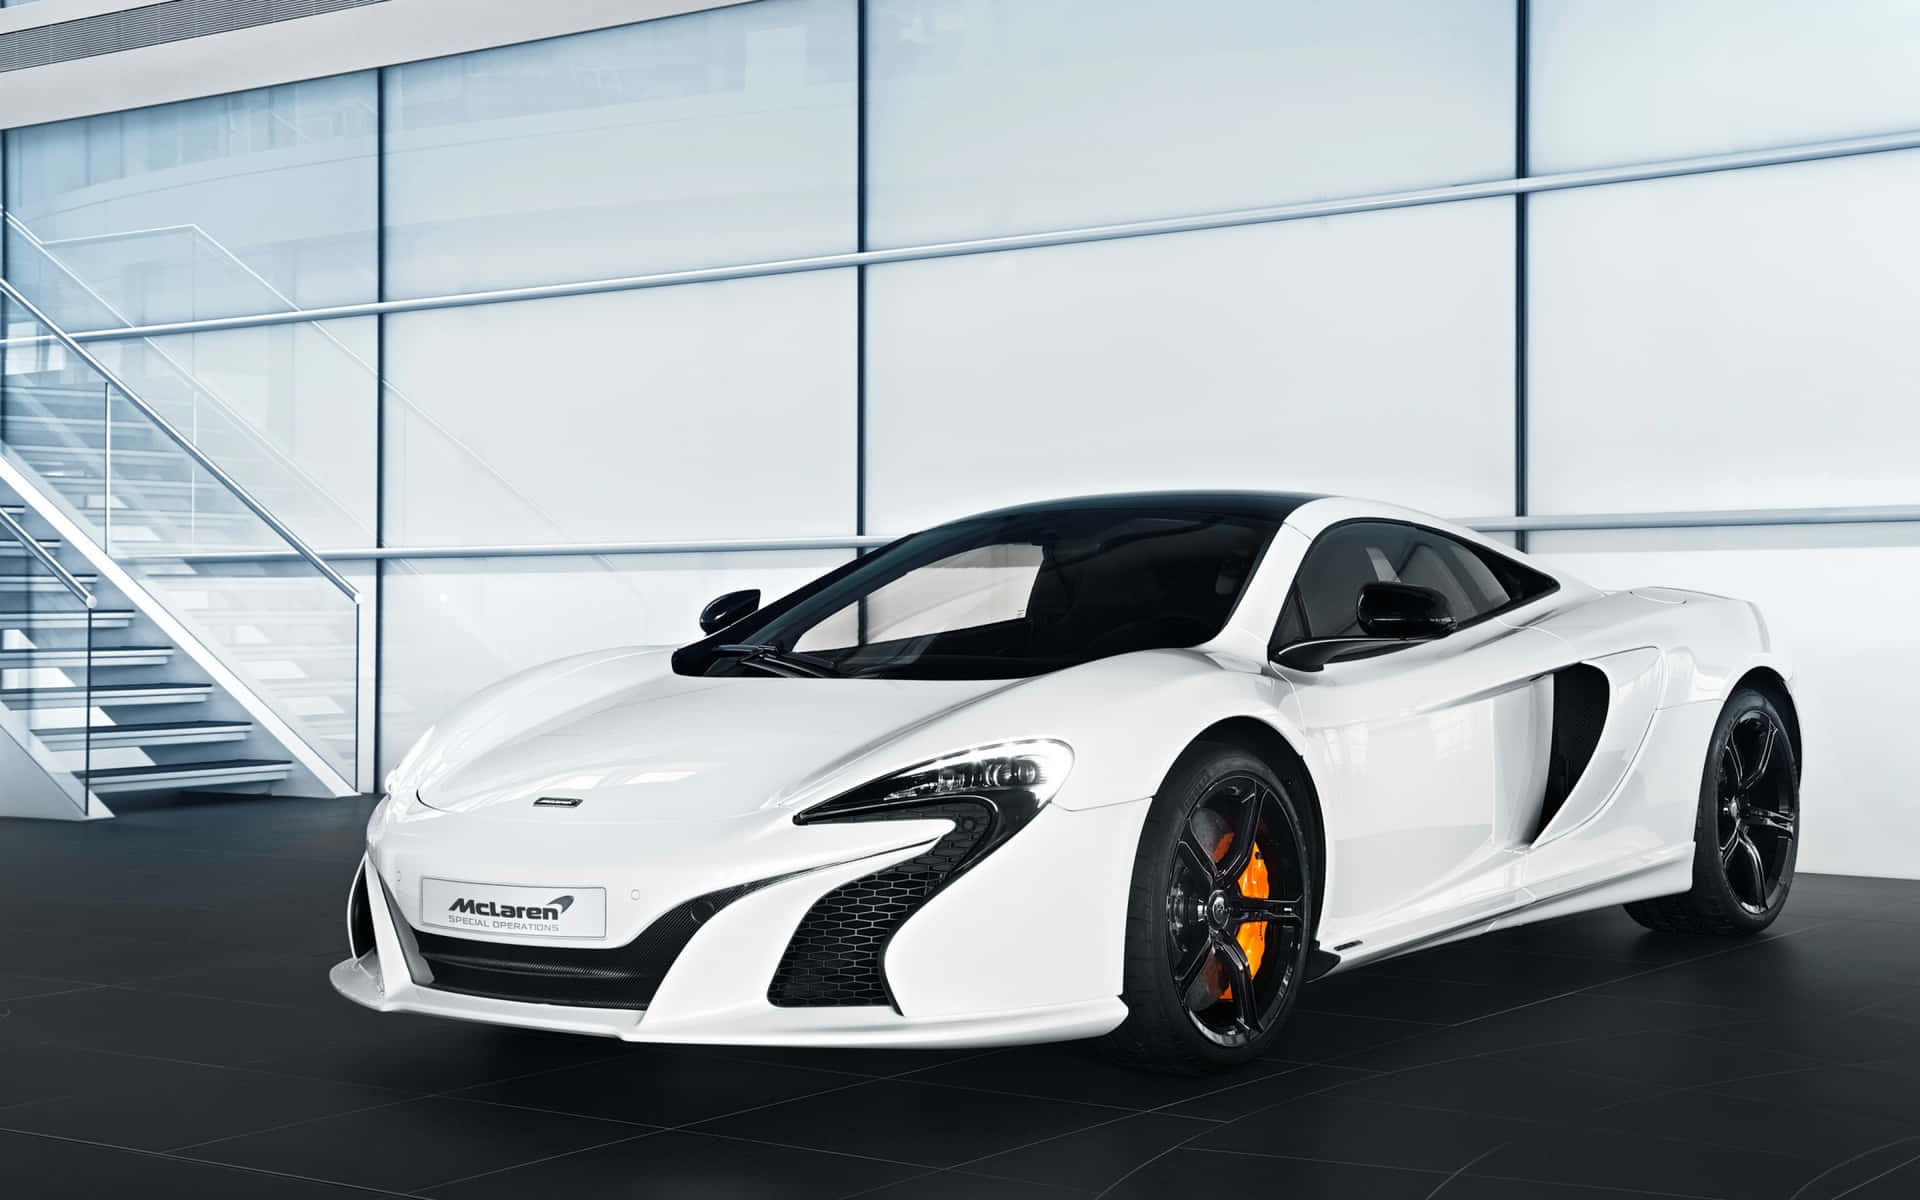 Spænd selen - Luxuri og hastighed kombineret i det cool McLaren Wallpaper